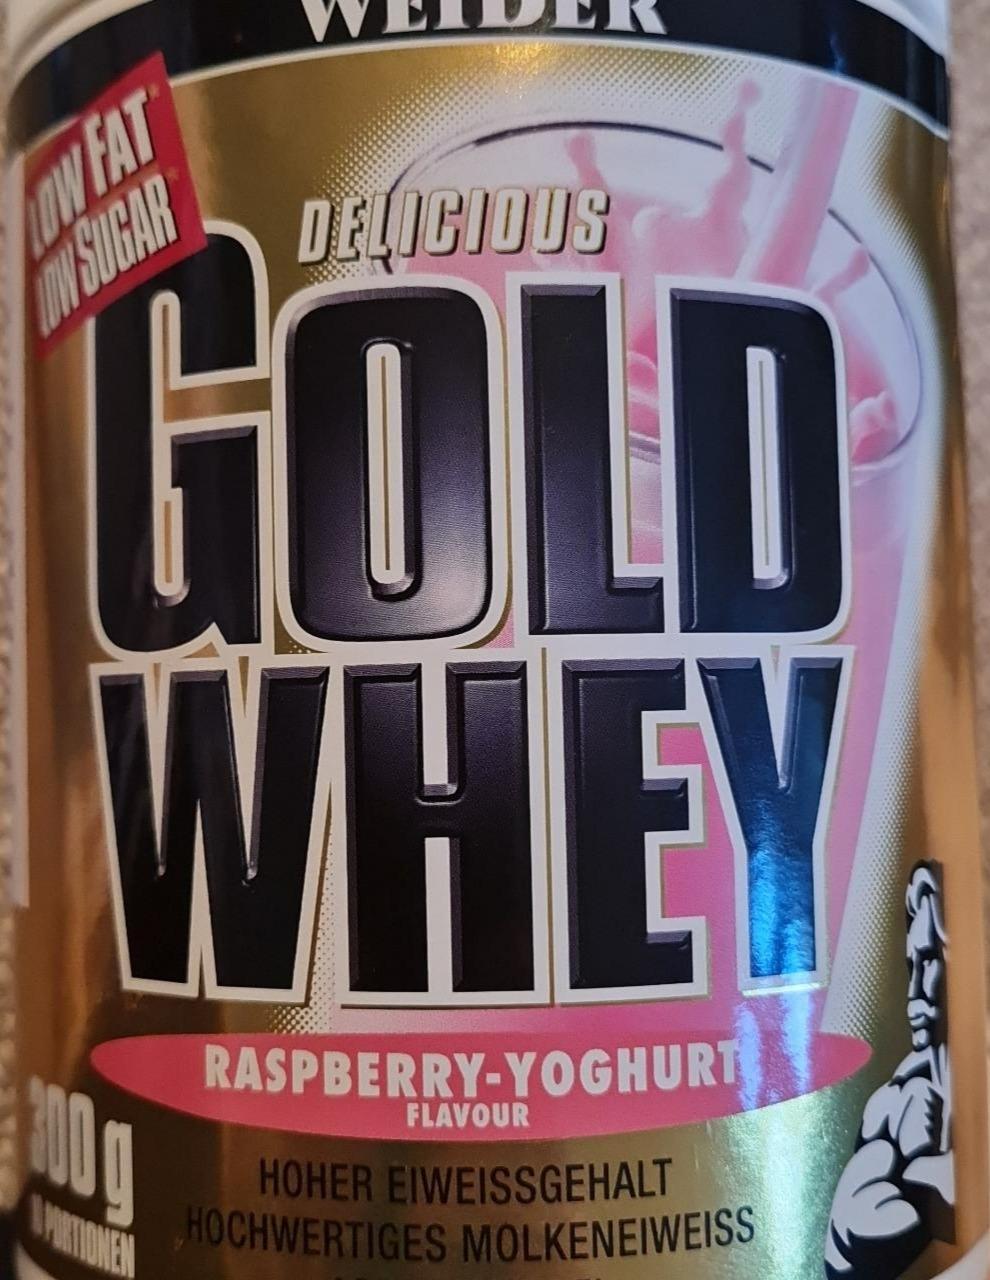 Fotografie - Delicious Gold Whey Raspberry Yoghurt Weider